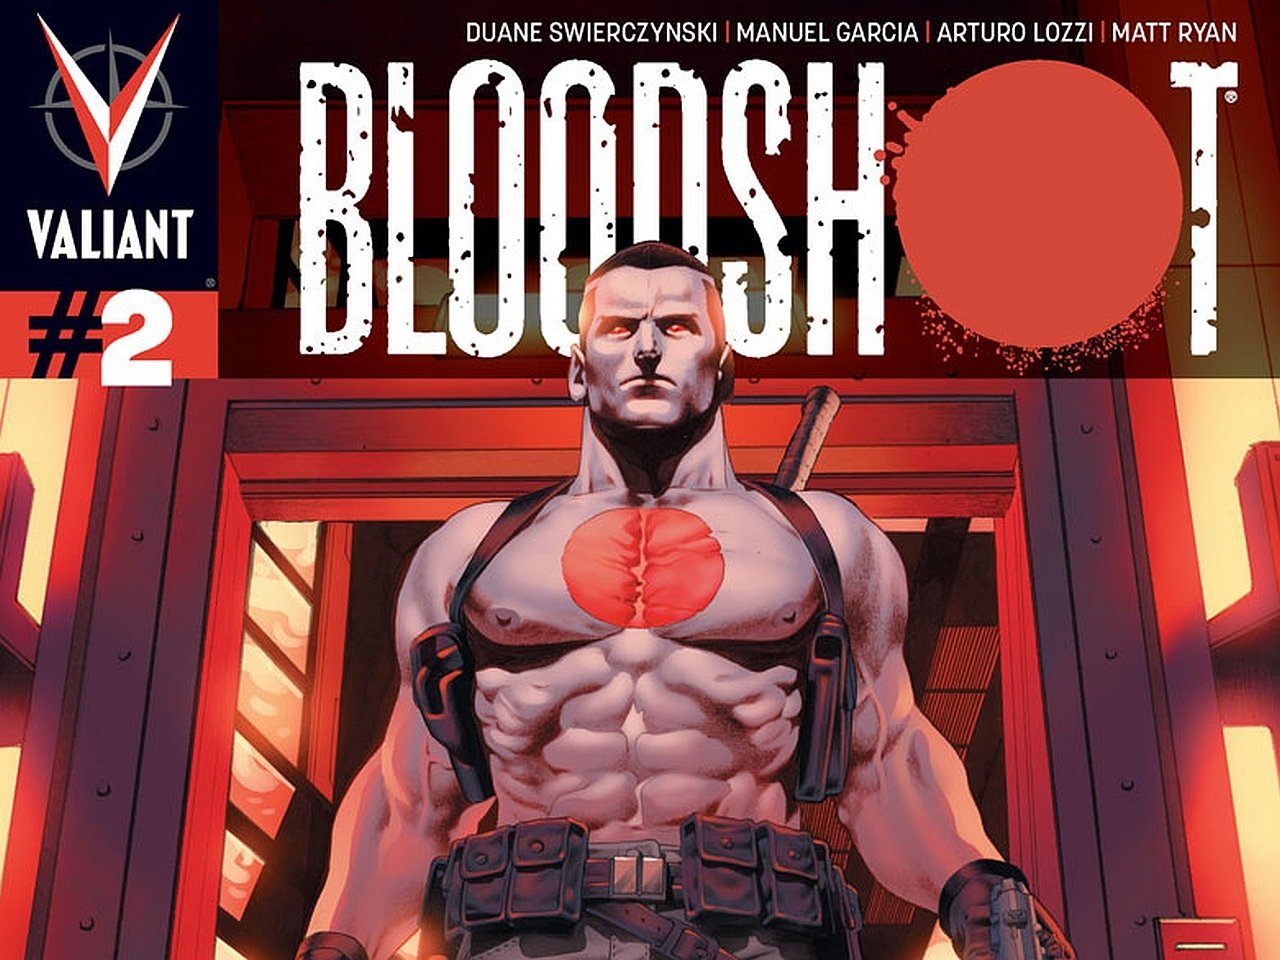 download bloodshot comic